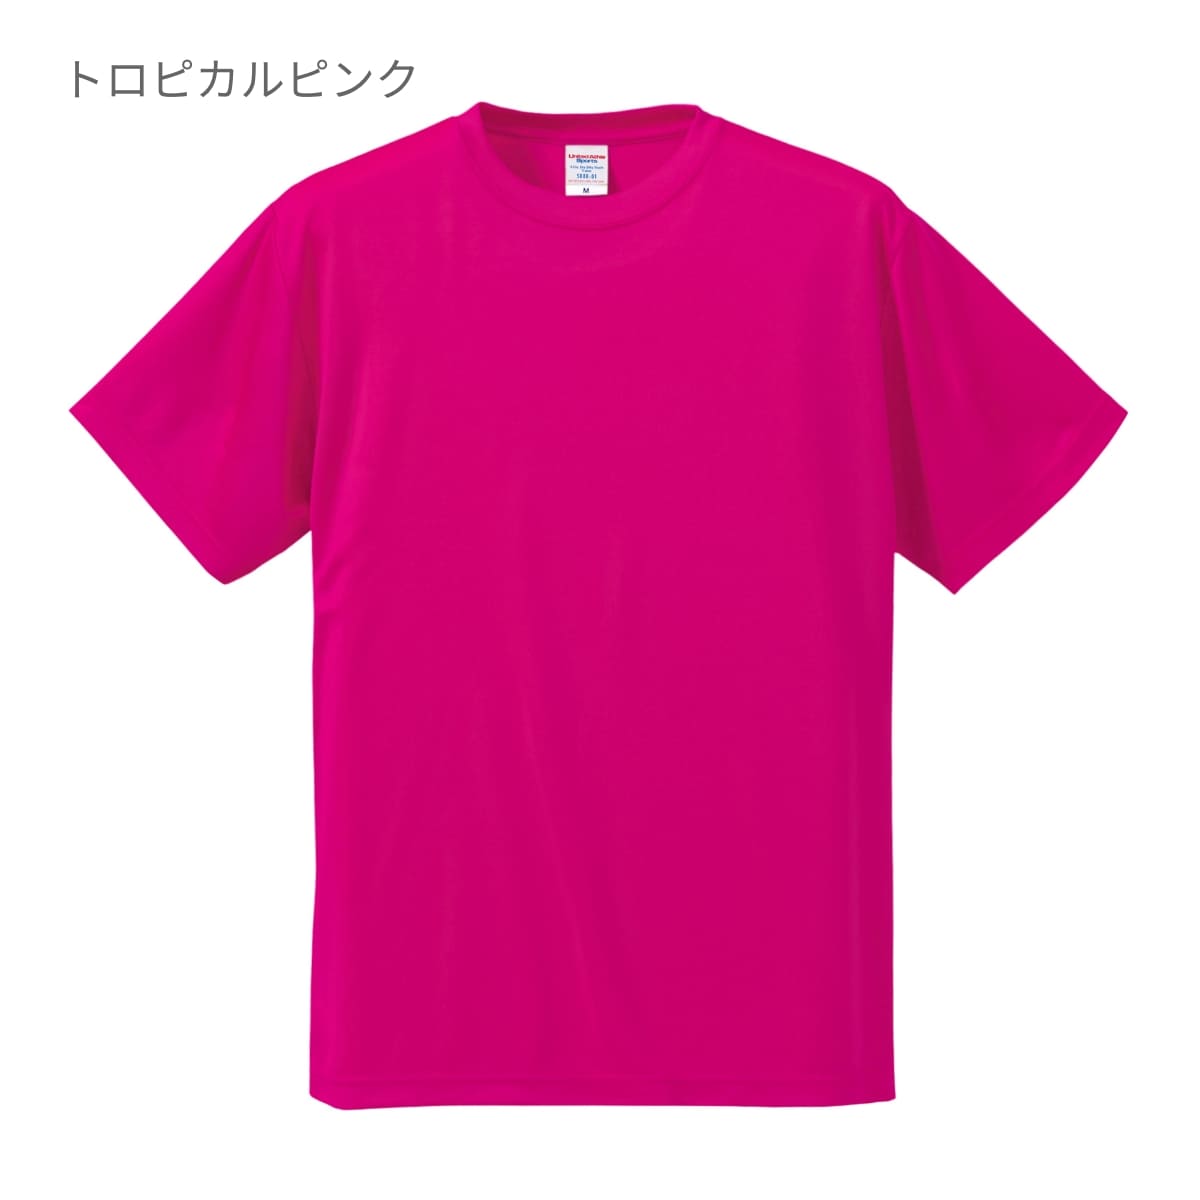 Tシャツ/カットソー専用 セーラーT シルキートレーナー